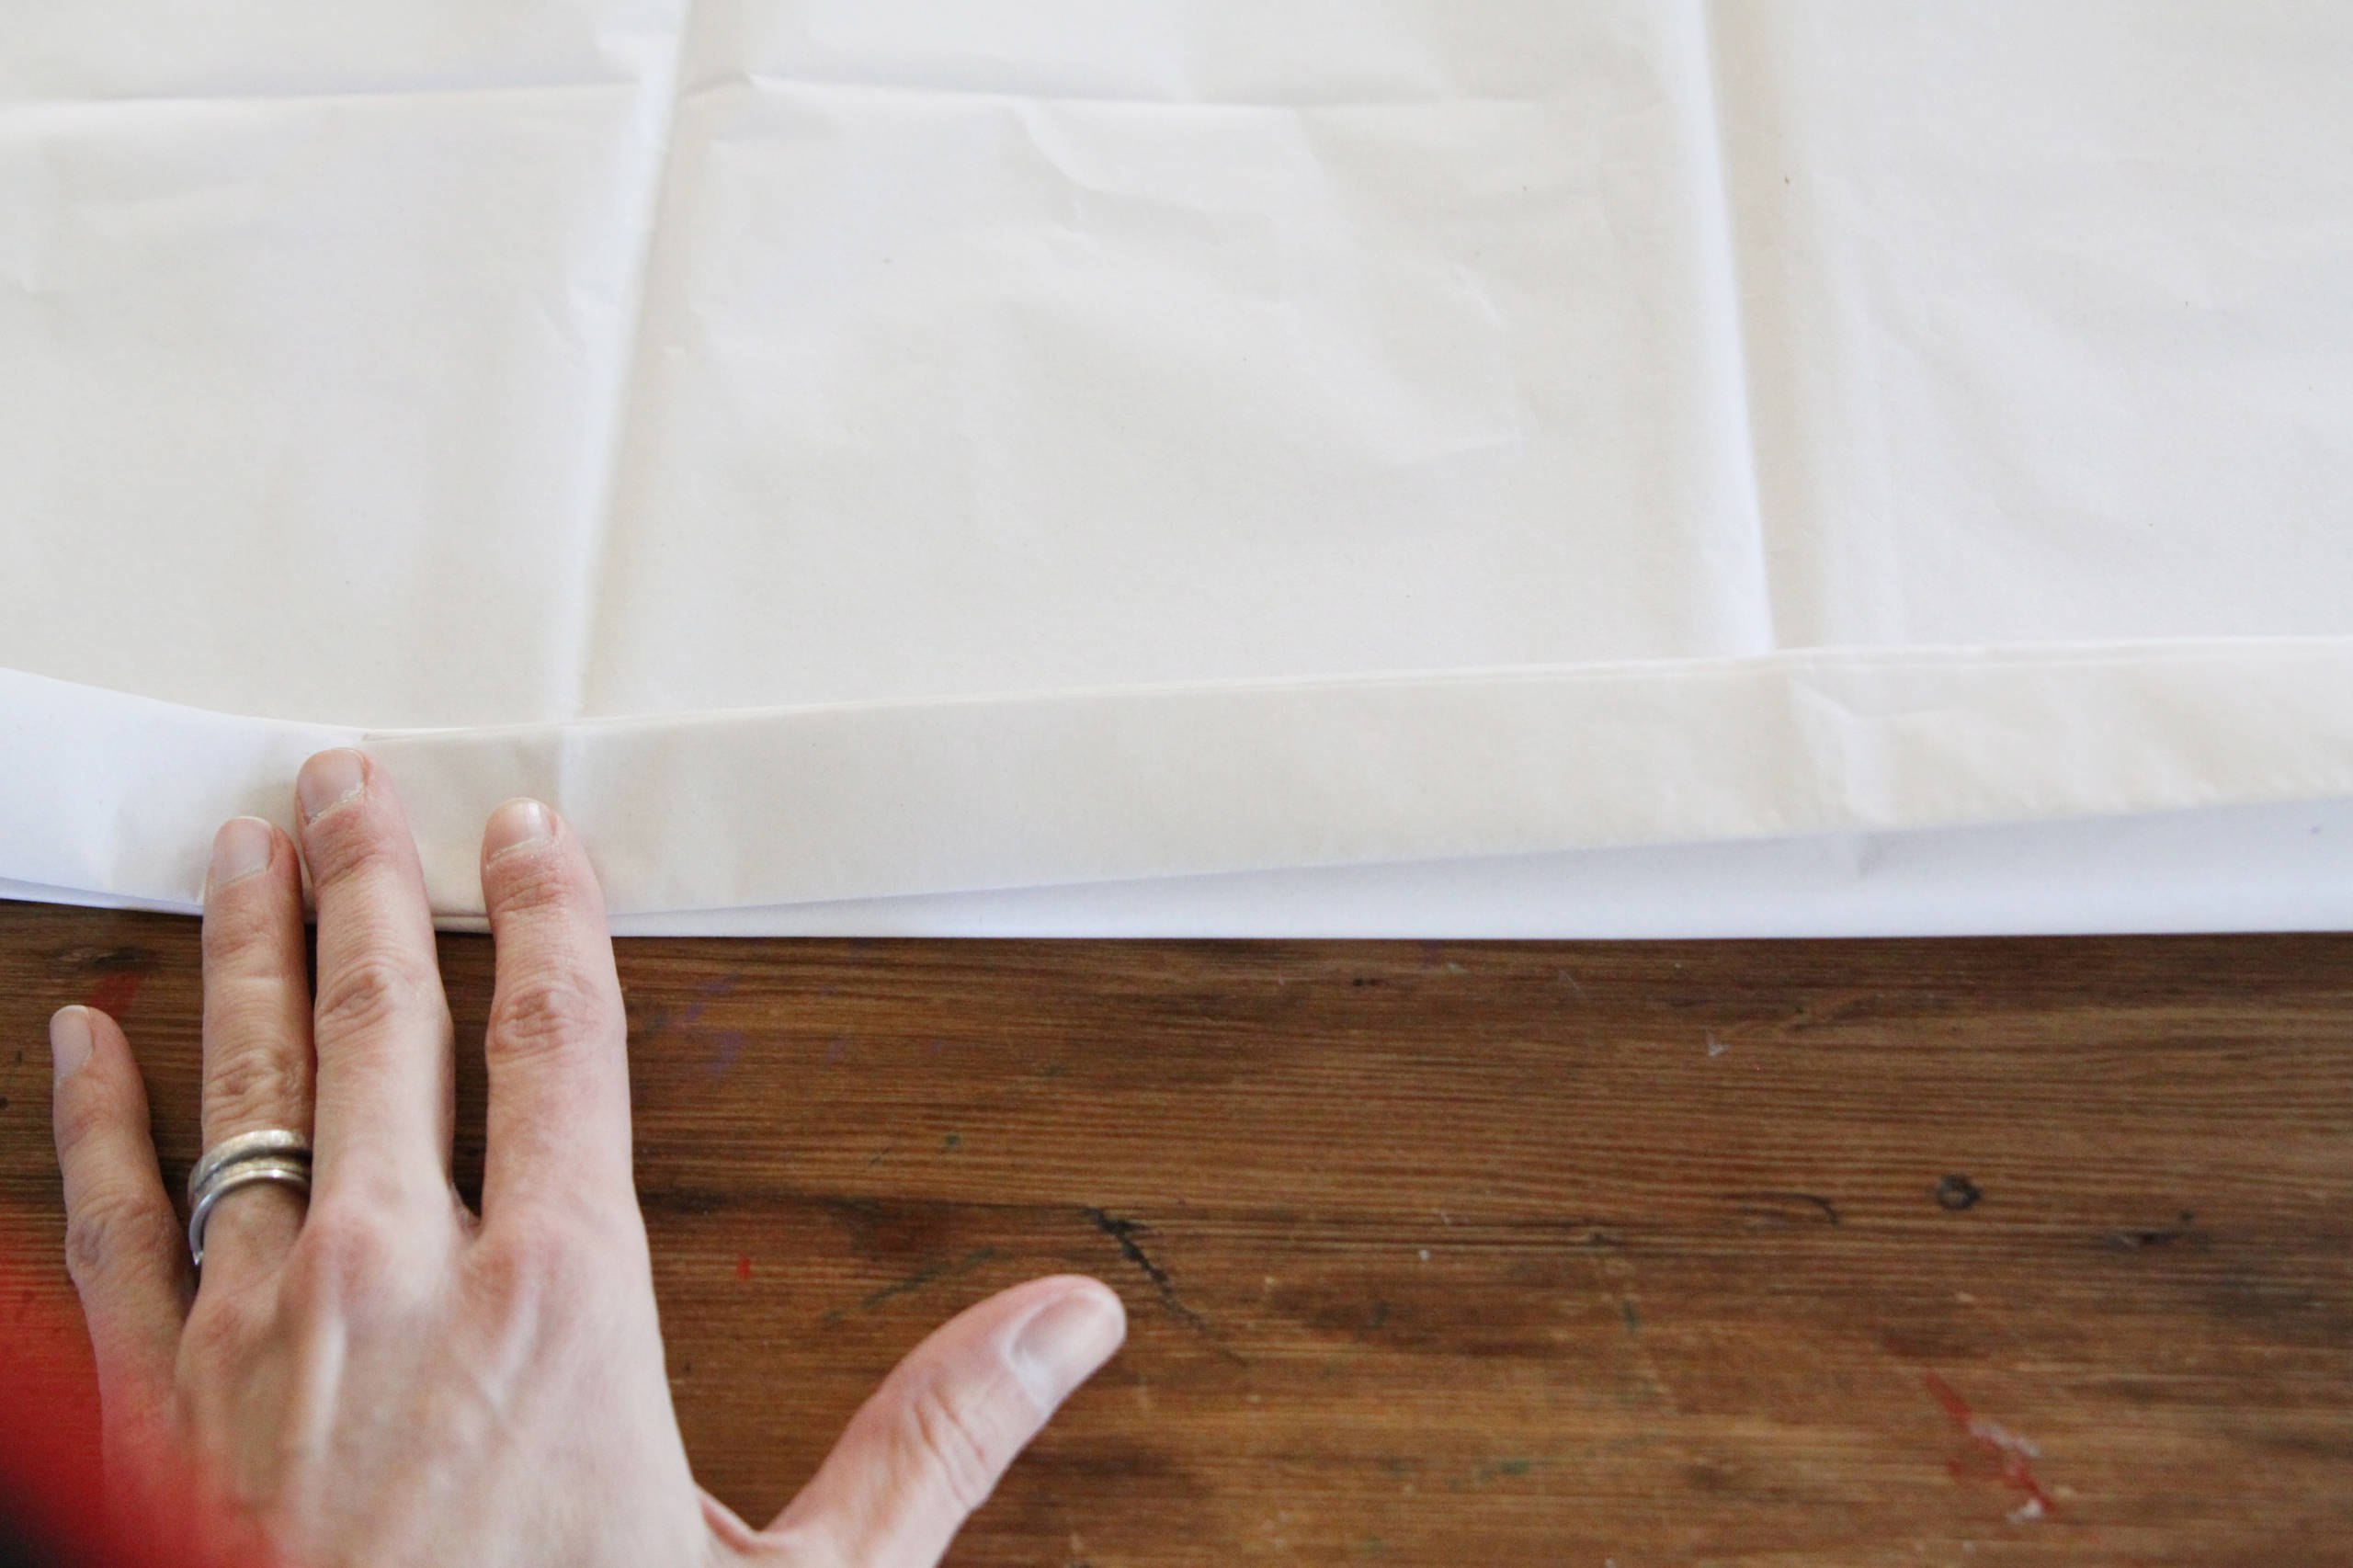 Как сделать бумажные помпоны своими руками: фото и инструкция